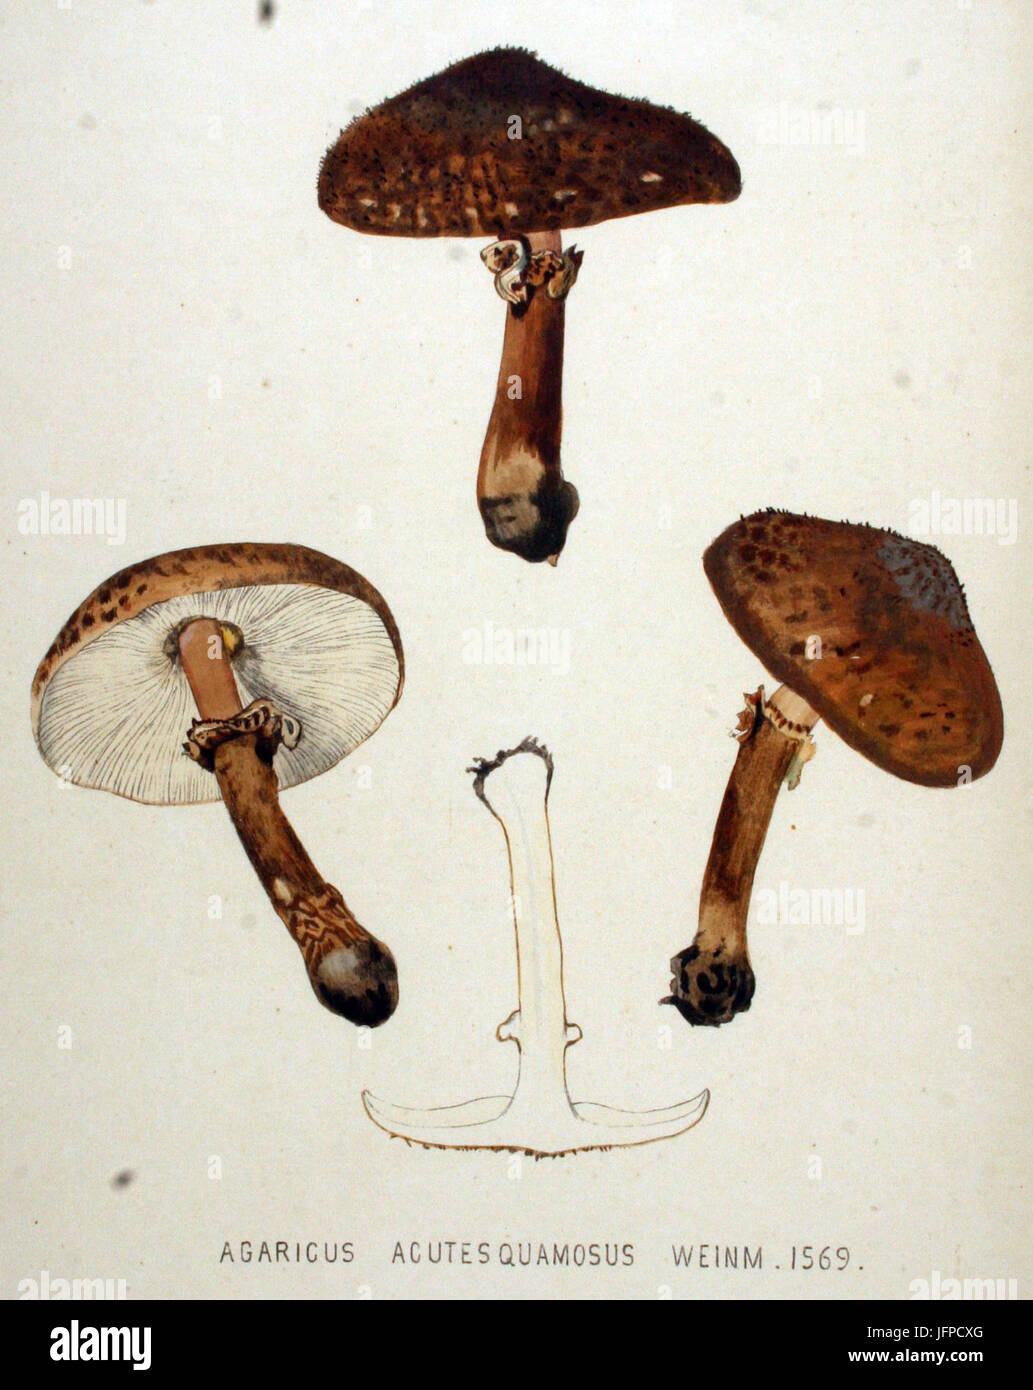 Agaricus acutesquamosus   Flora Batava   Volume v20 Stock Photo